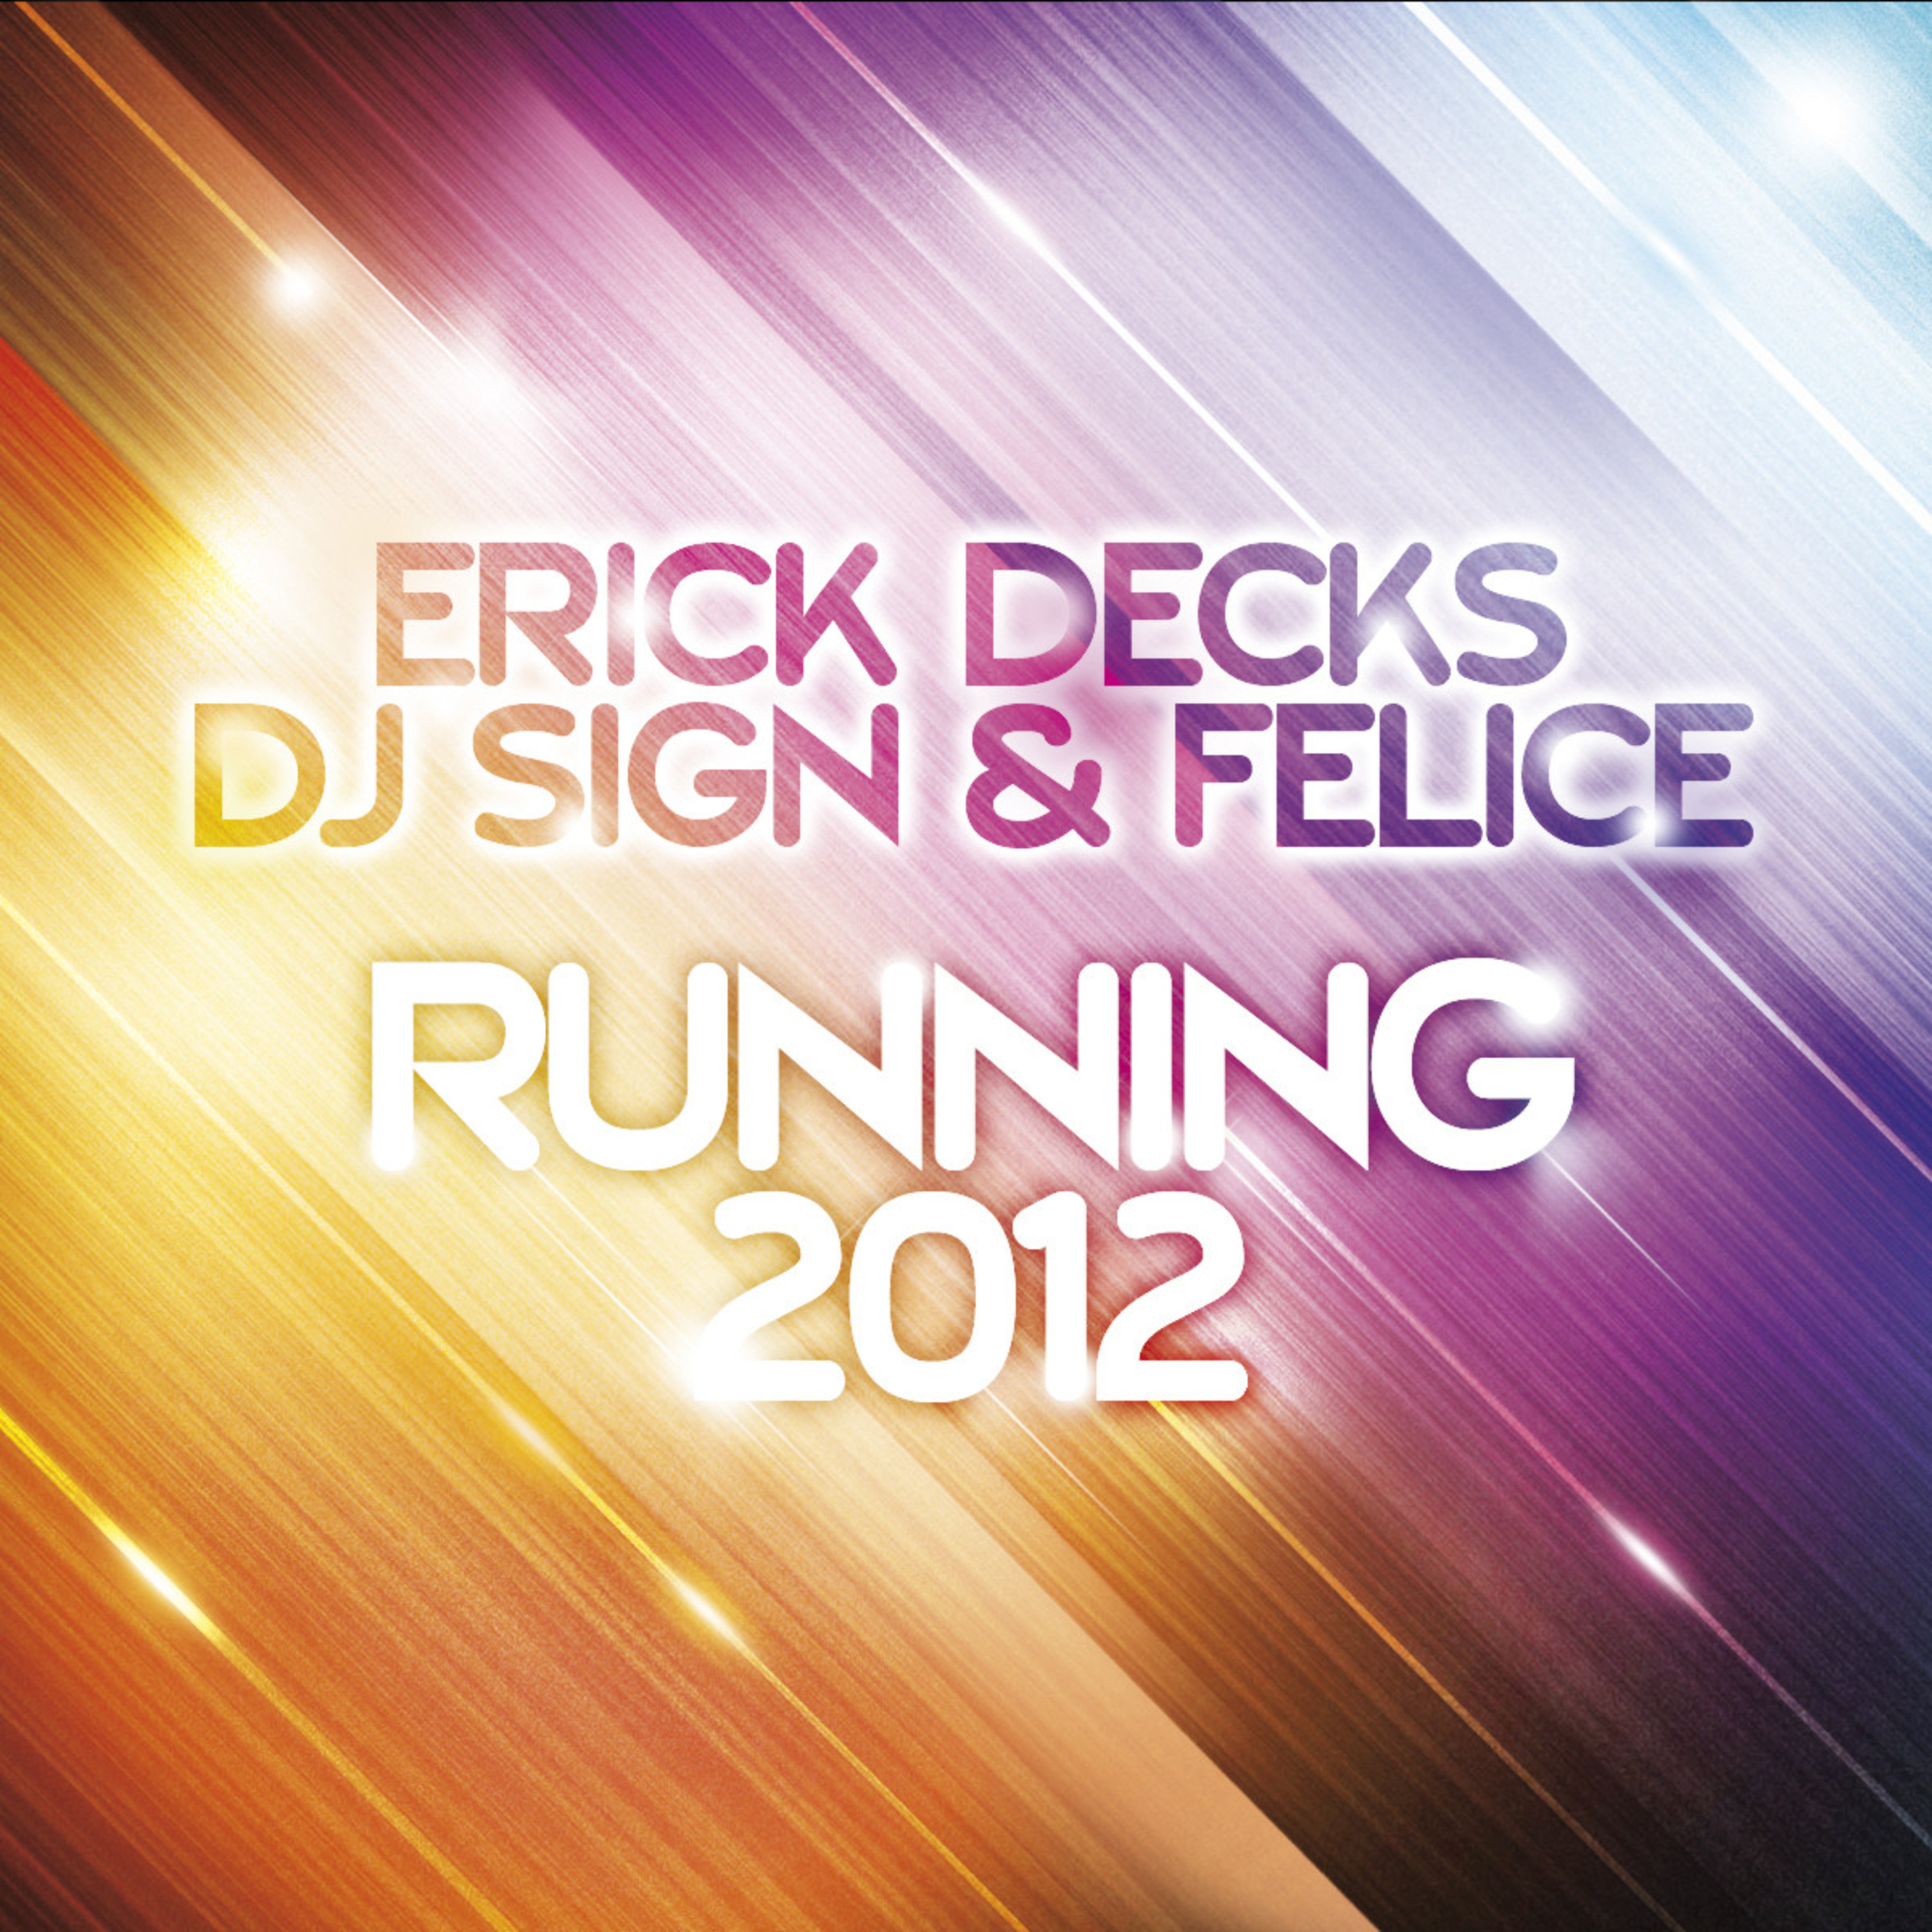 Running 2012 (DJ Sign Dirty Bass Mix)